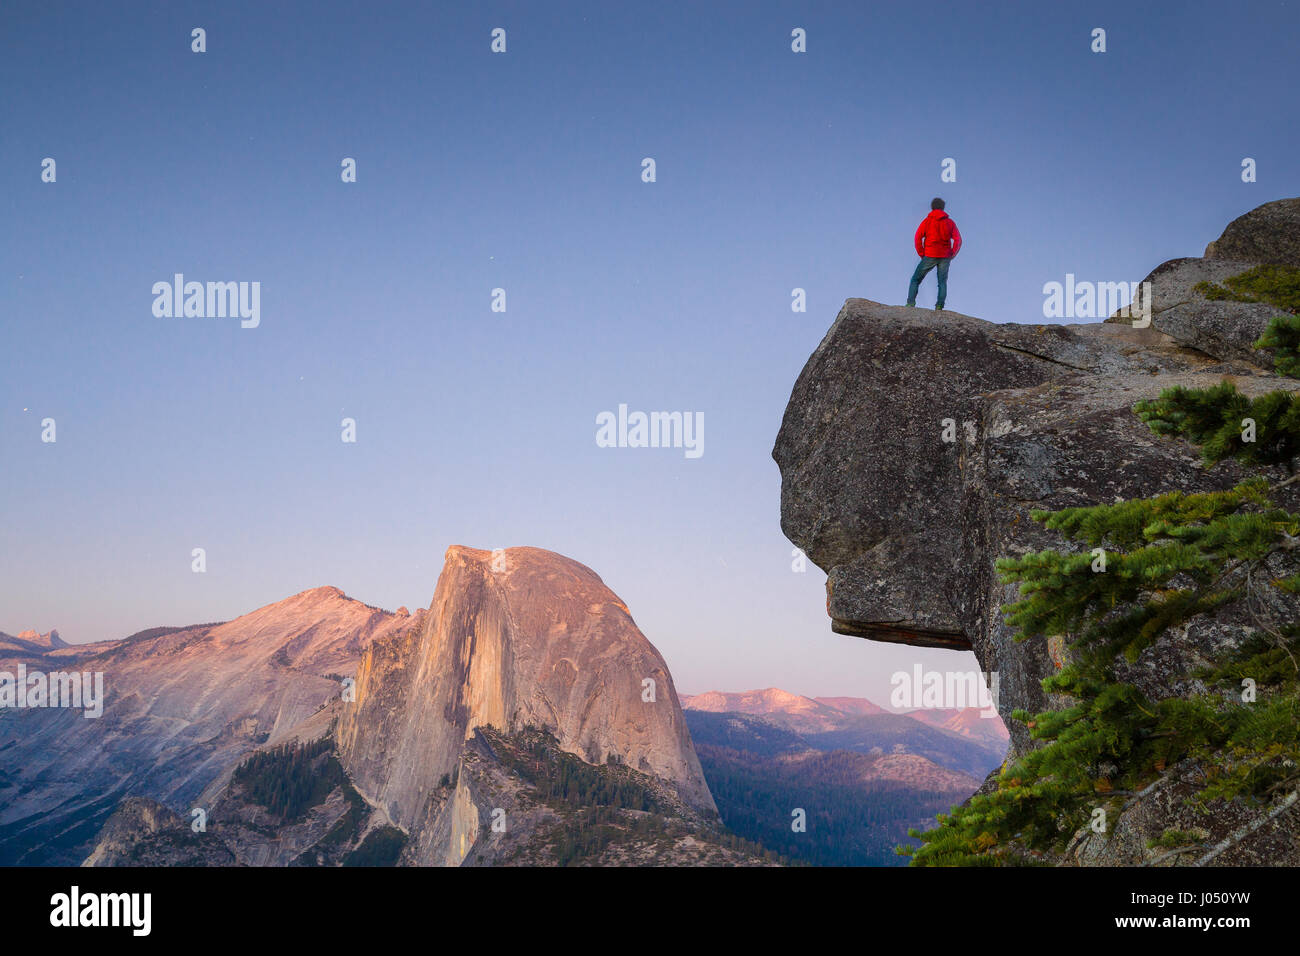 Un intrépido caminante está de pie sobre una roca que sobresale disfrutando de la vista hacia la famosa cúpula de mitad en glaciar Punto vistas al atardecer, Yosemite NP, EE.UU. Foto de stock